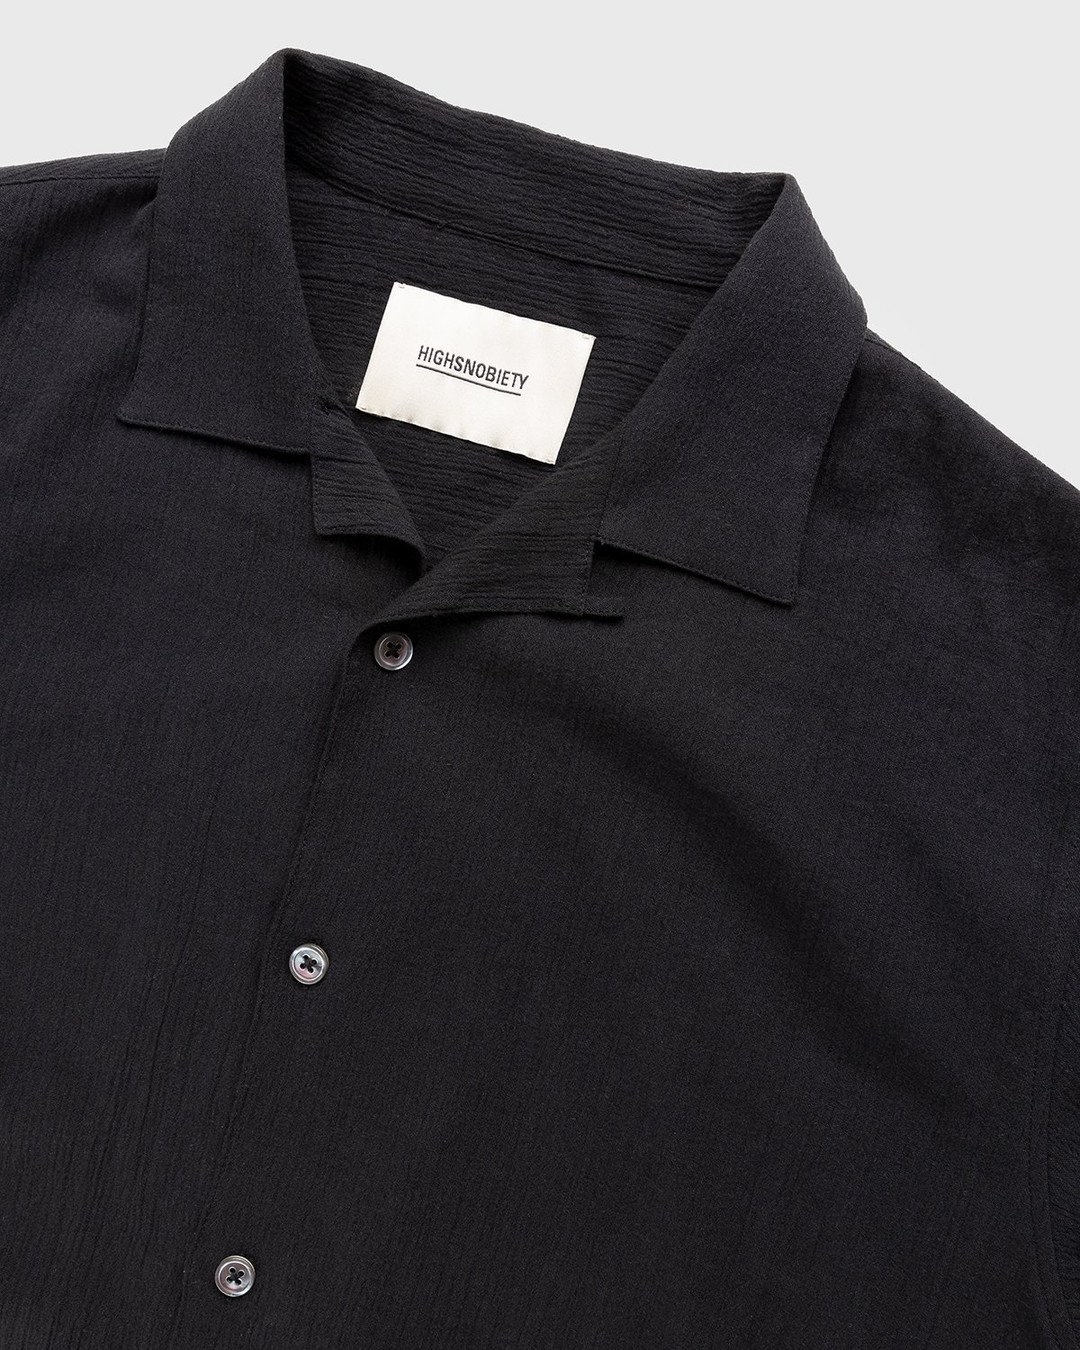 Highsnobiety – Crepe Short Sleeve Shirt Black - Shortsleeve Shirts - Black - Image 4